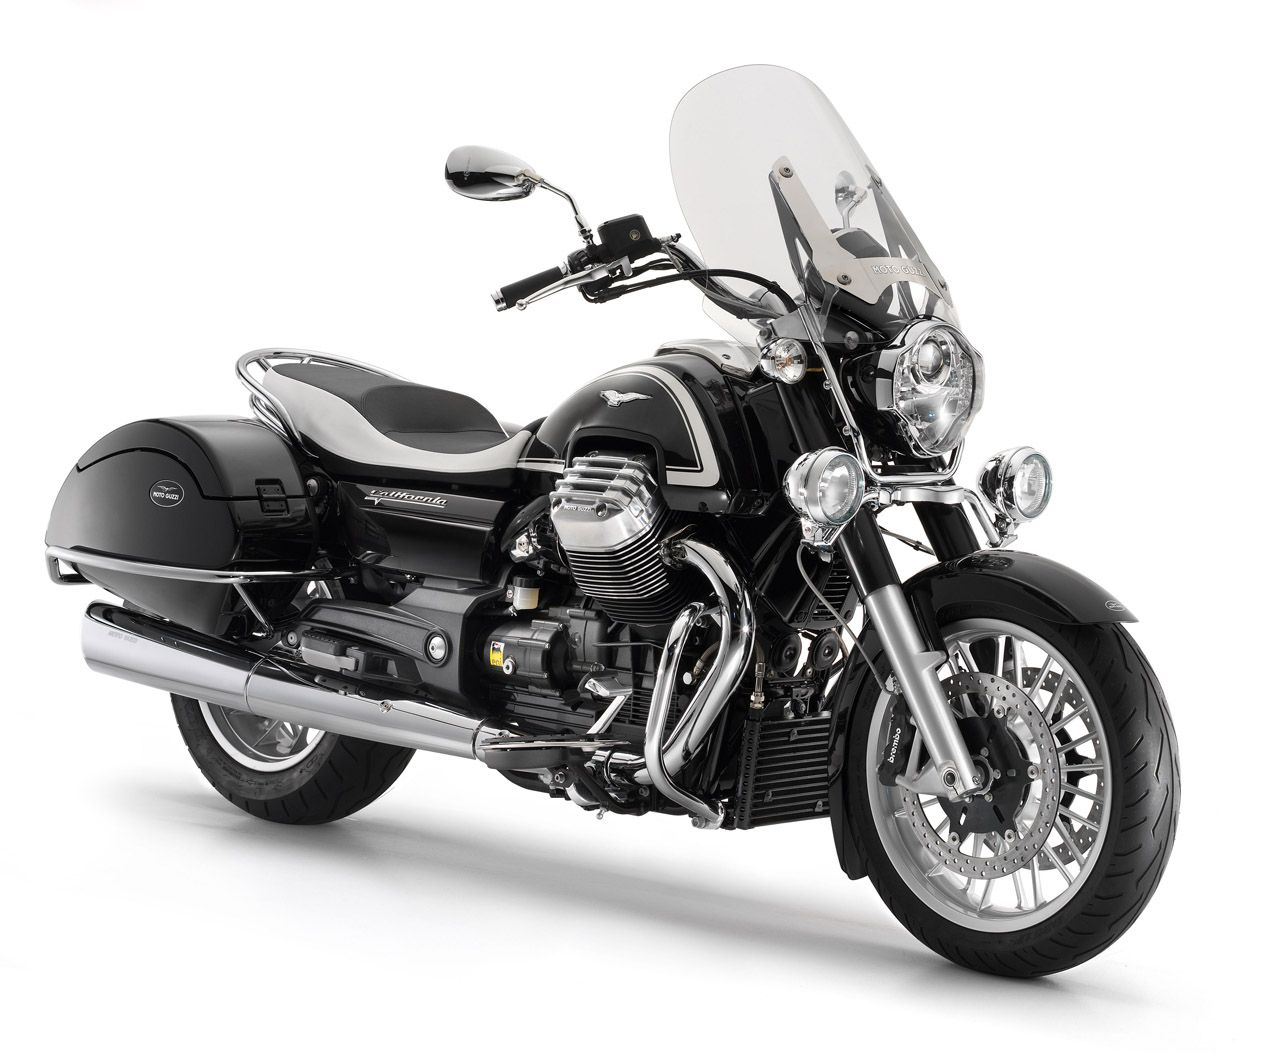 2013 Moto Guzzi California 1400 Touring and Custom